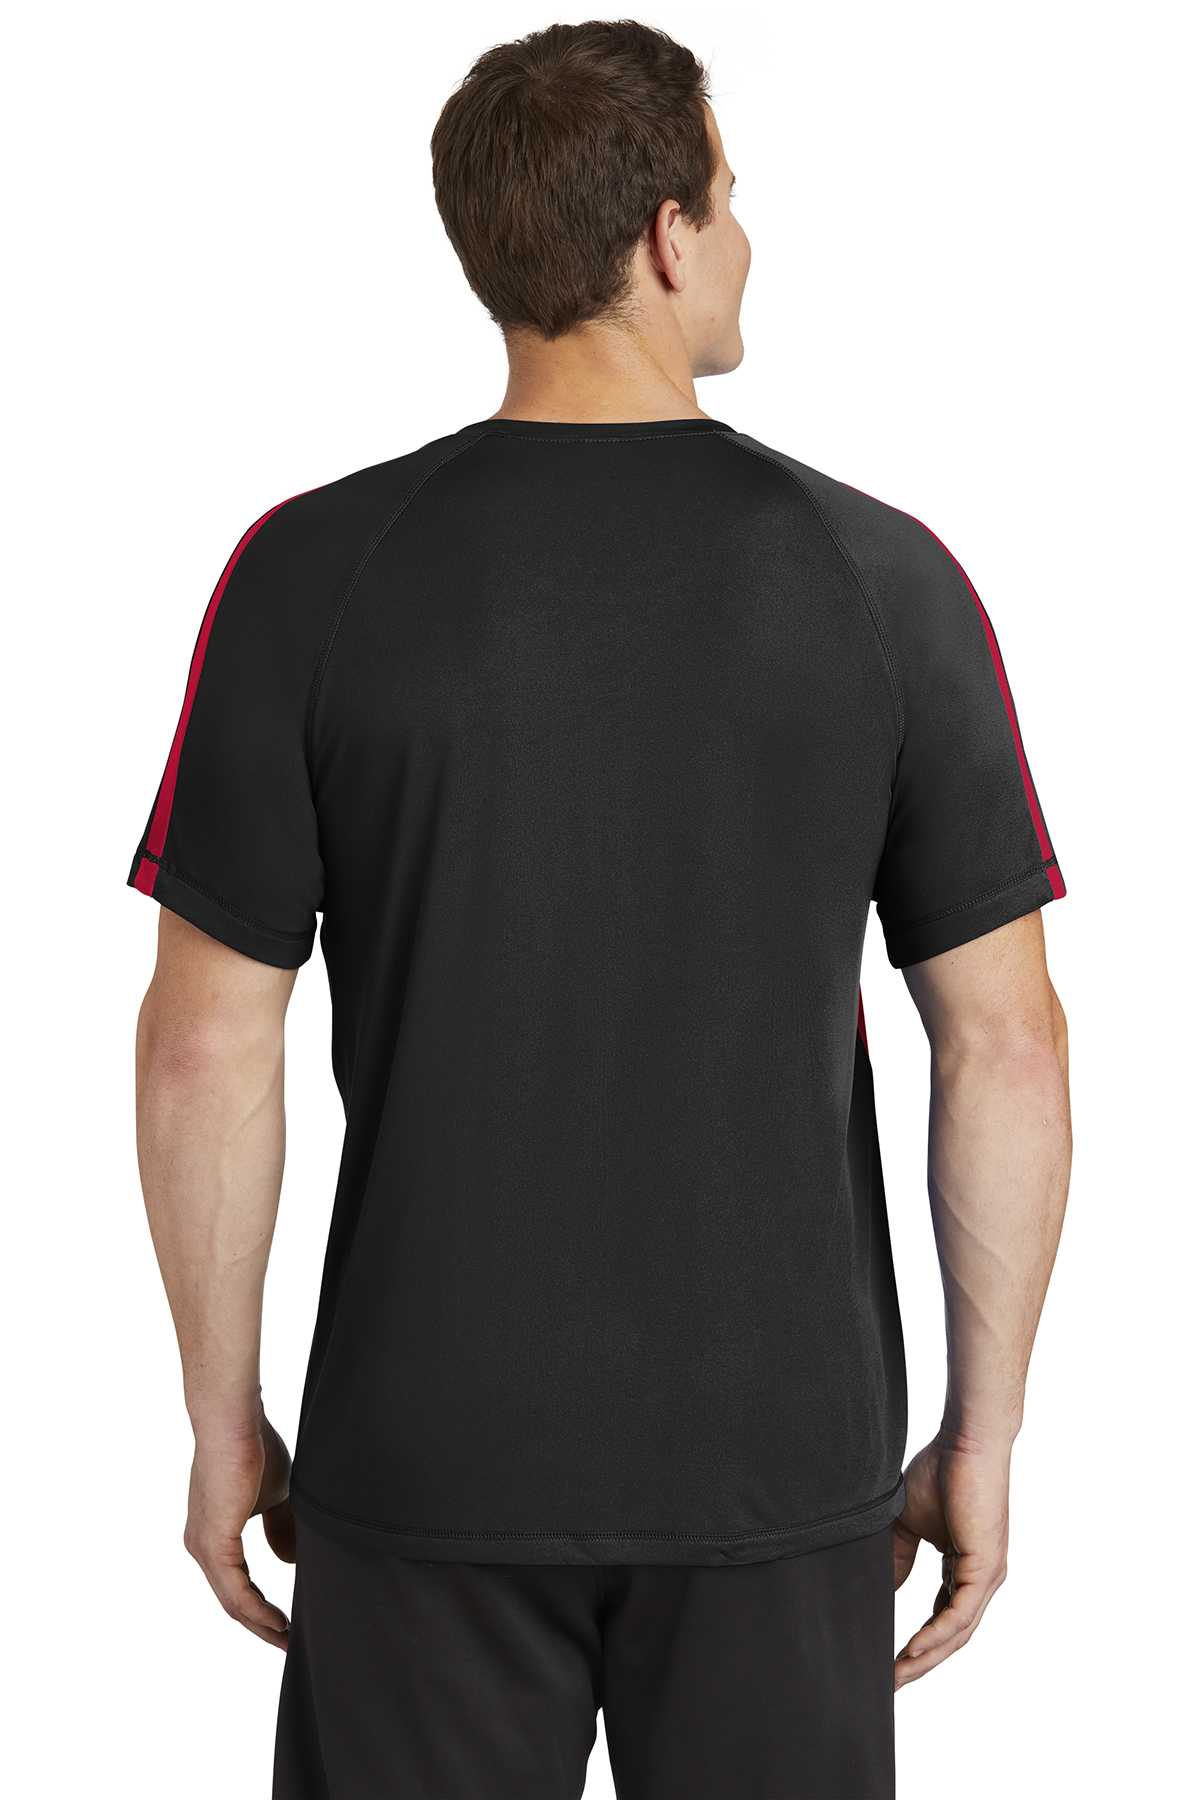 Sport-Tek® Camiseta de manga larga. Ligera y absorbente, resistente a la  decoloración. ST350LS verde bosque